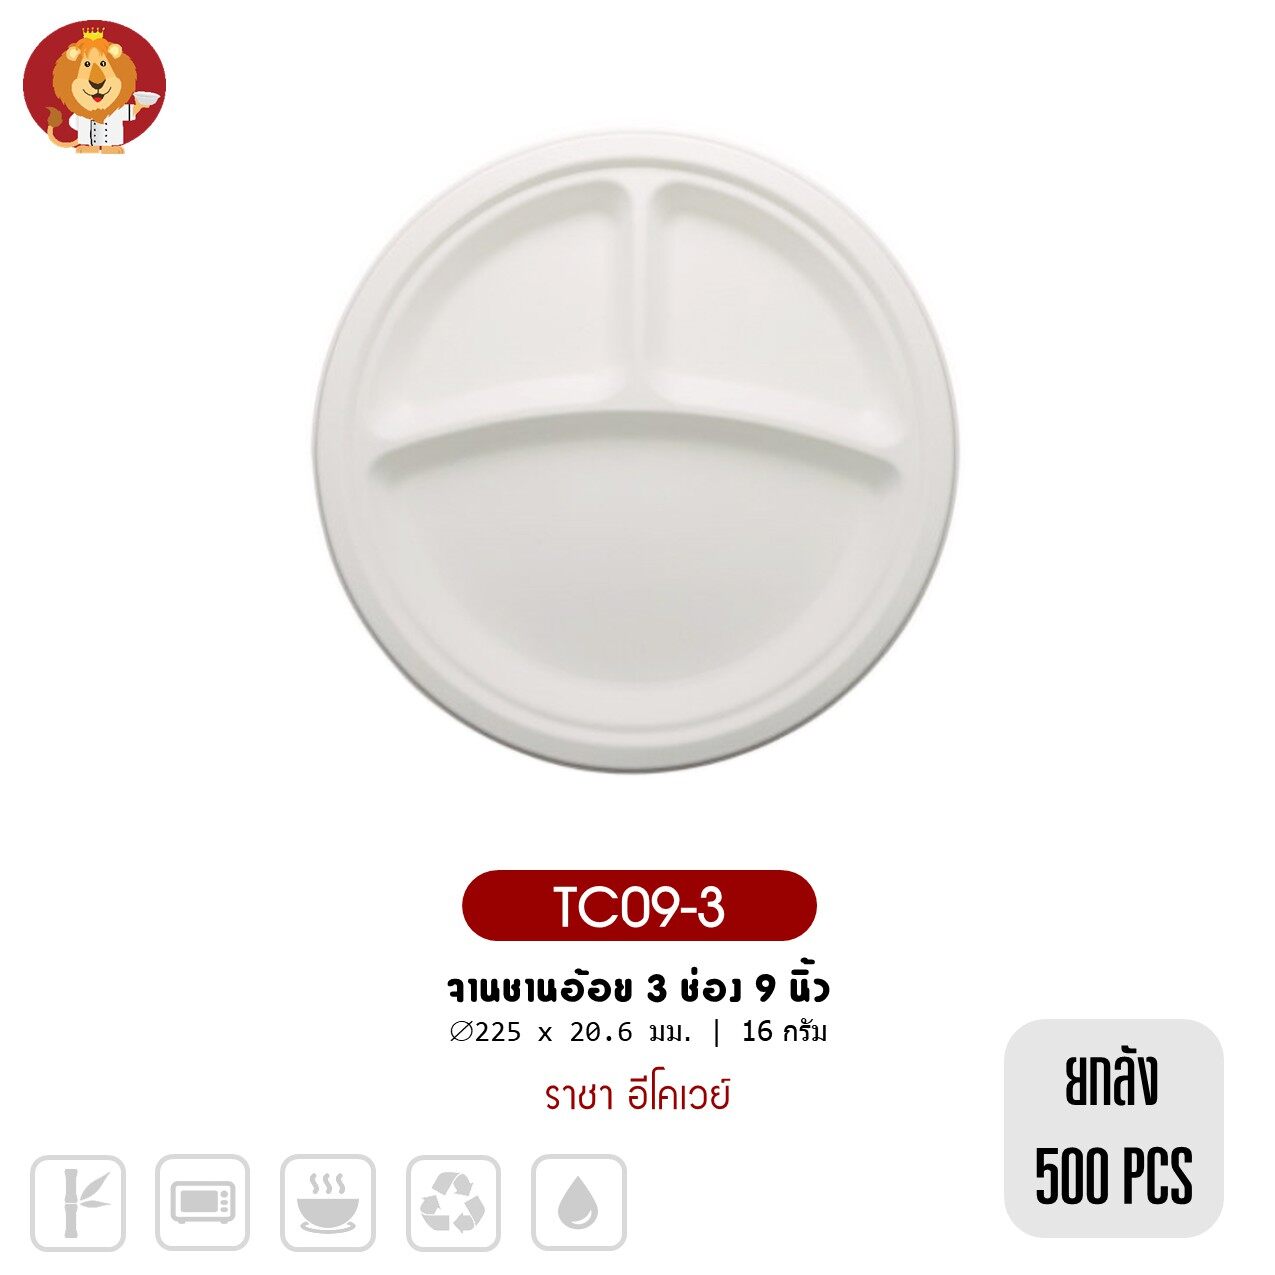 (ยกลัง 500 ชิ้น) จานชานอ้อย 3 ช่อง 9 นิ้ว สีขาว [ TC09-3 ] แบรนด์ ราชา Ecoway